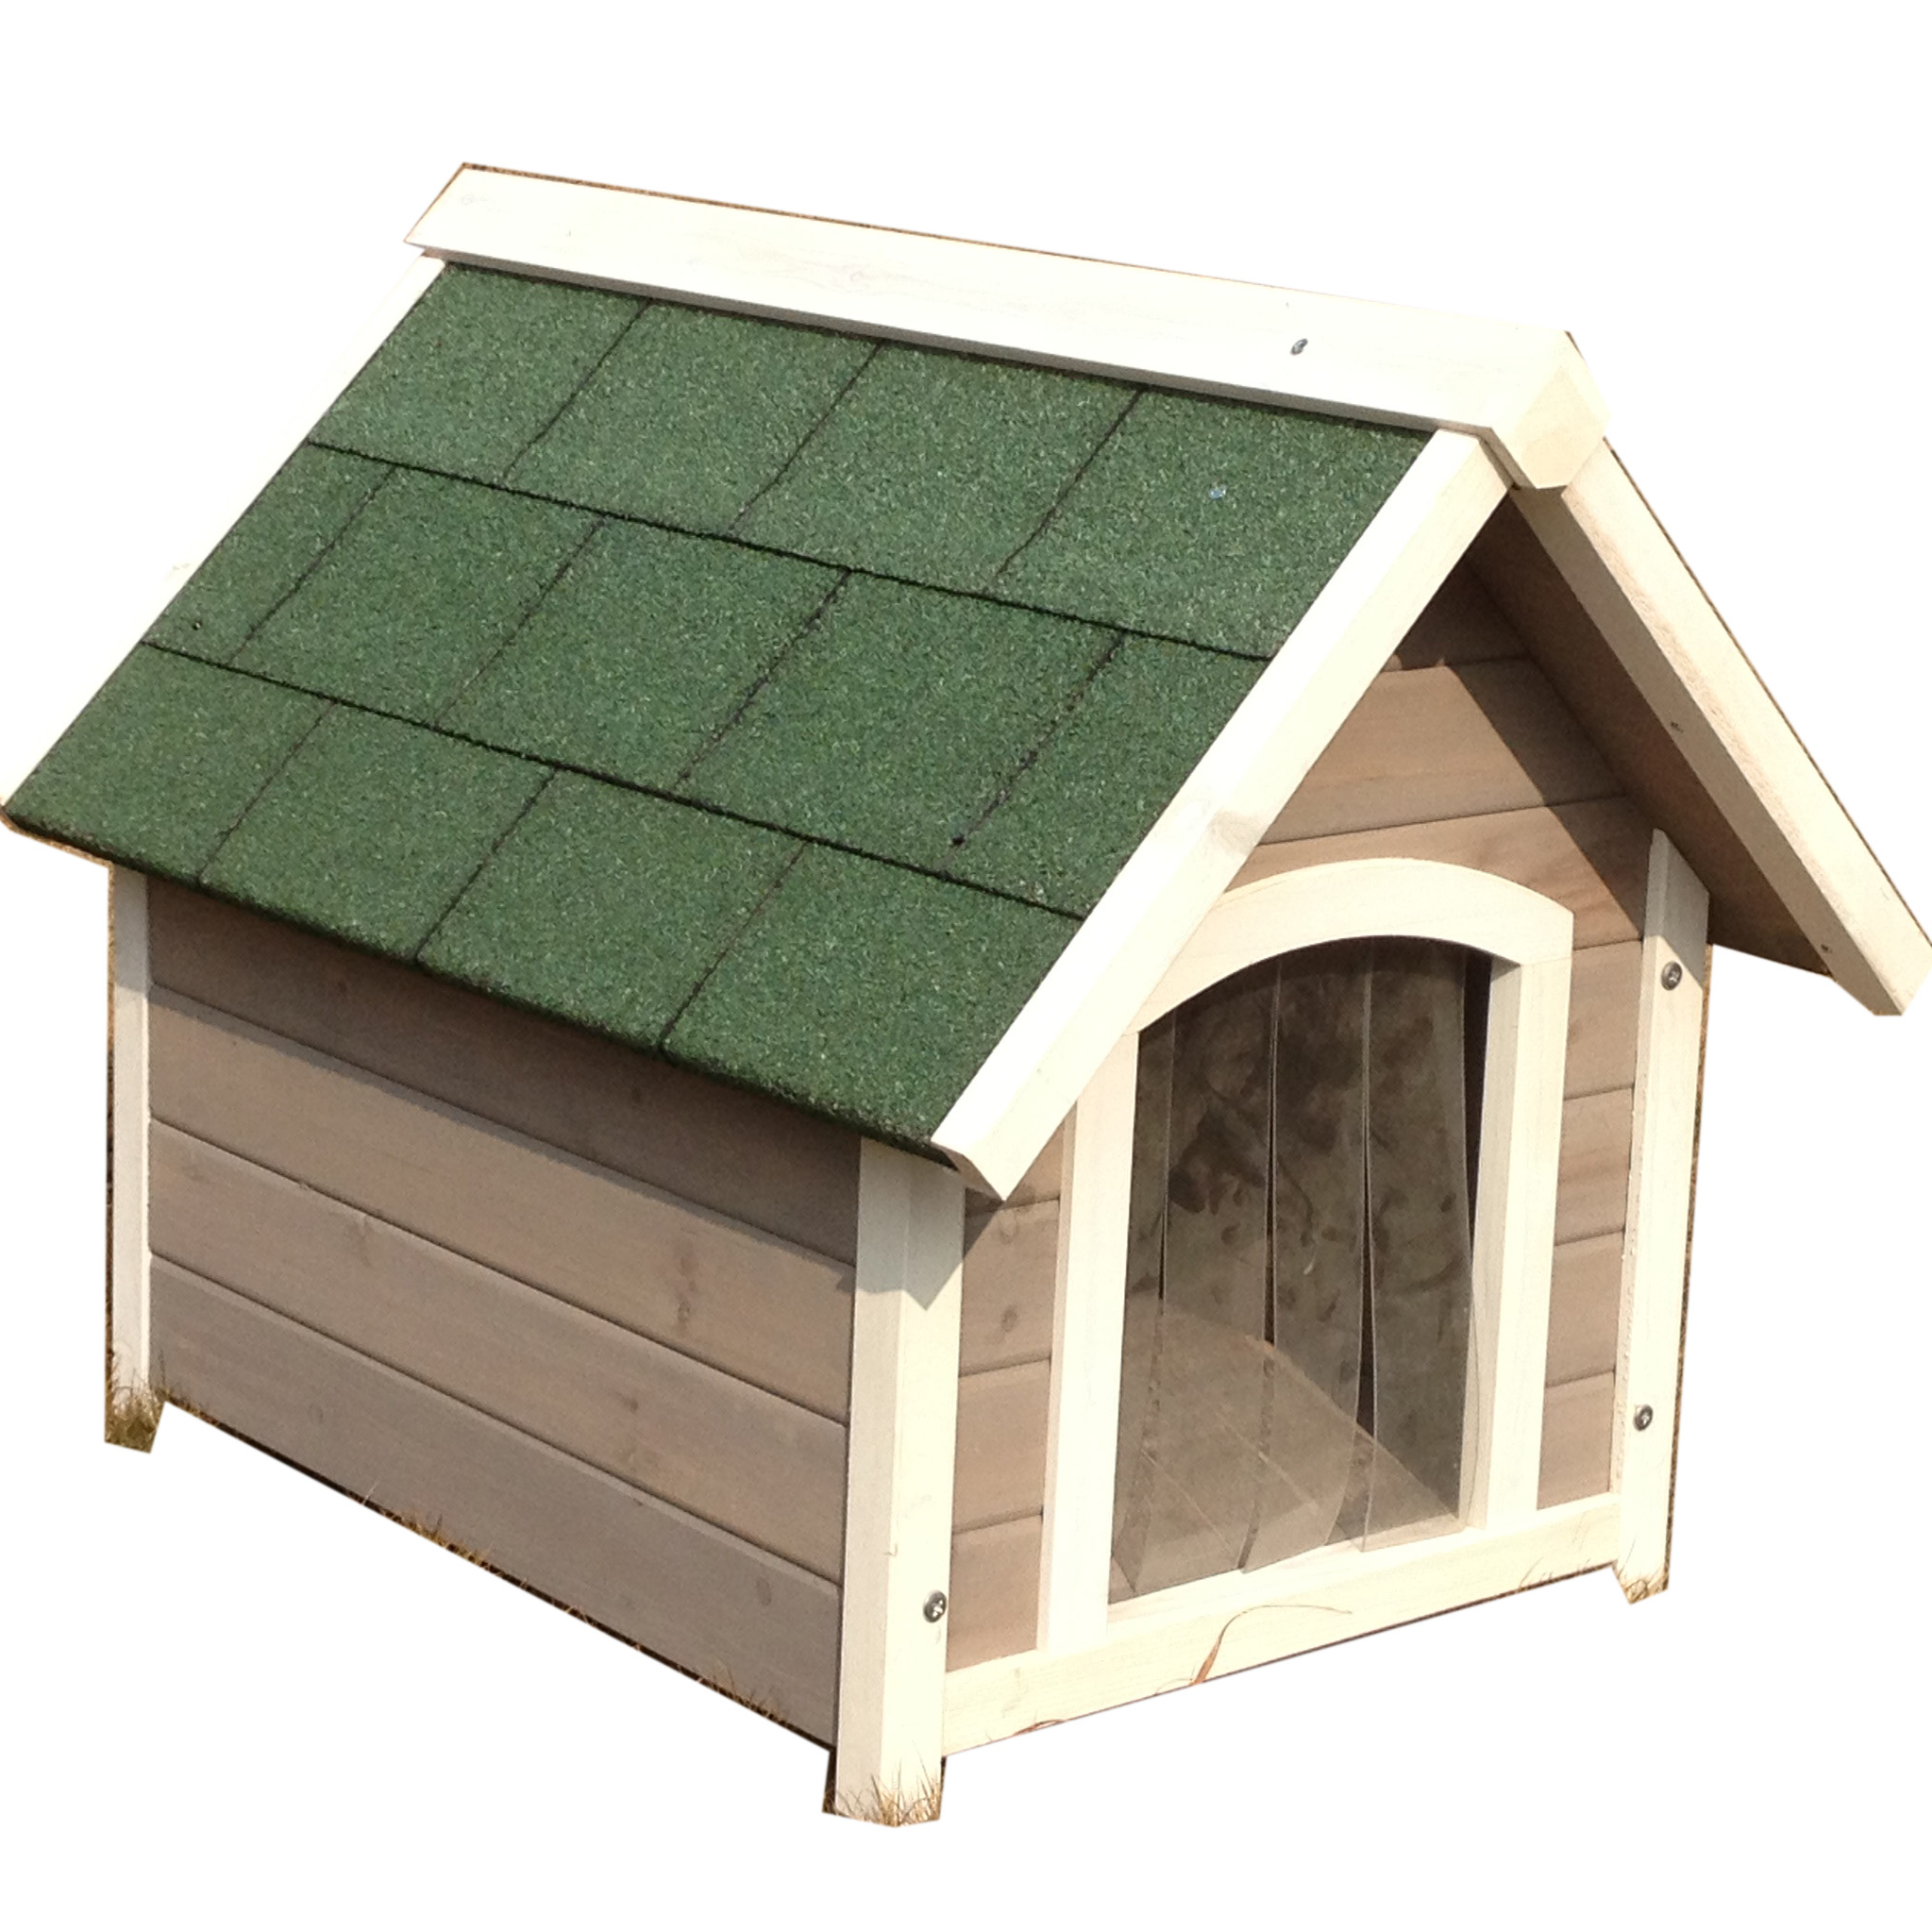 Grande cage de chiot de chenil de chien de peinture à base d'eau en bois imperméable extérieure avec le plancher démontable pour le nettoyage facile